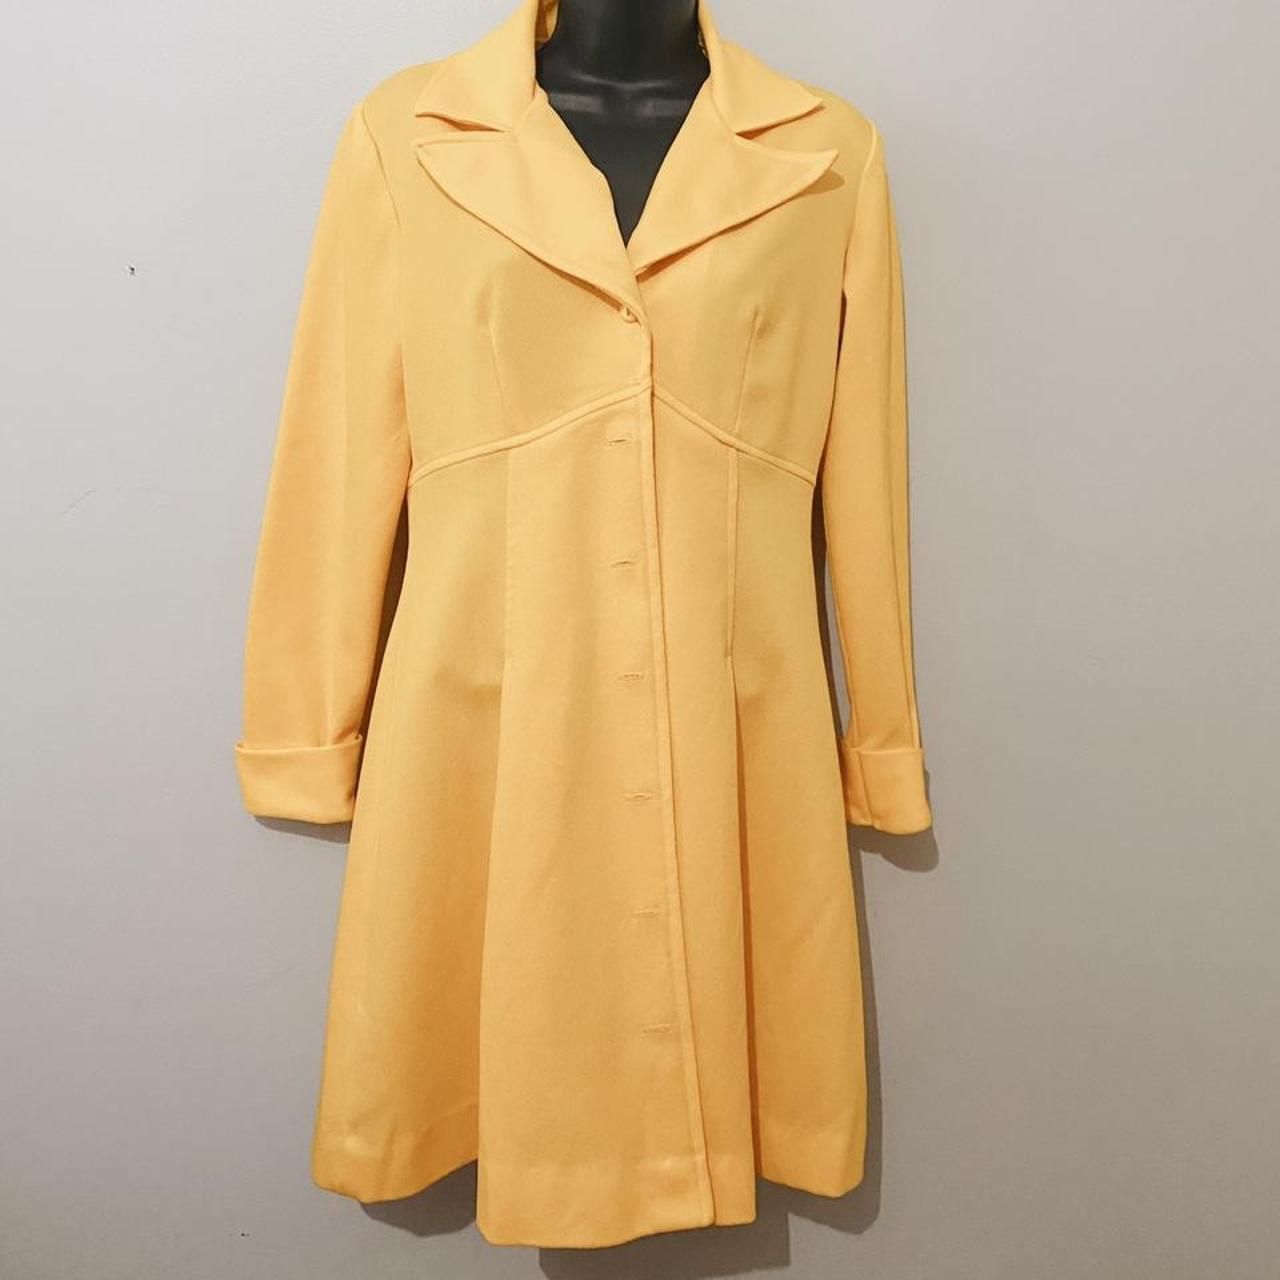 JCPenney Women's Yellow Jacket | Depop